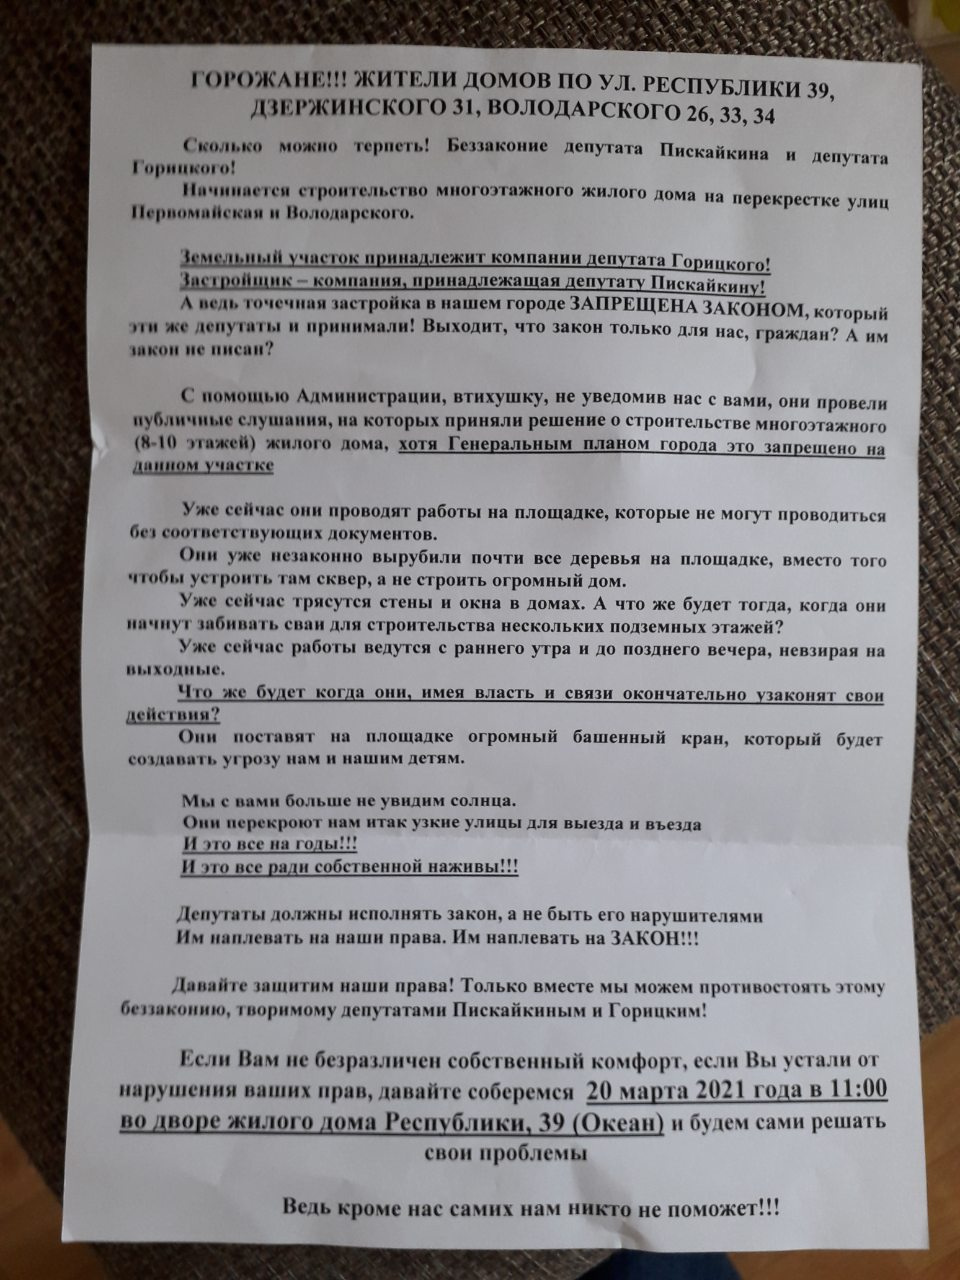 По документам участок и здание принадлежат двум женщинам, а не депутатам Дмитрию Горицкому и Владимиру Пискайкину, как указано в письме